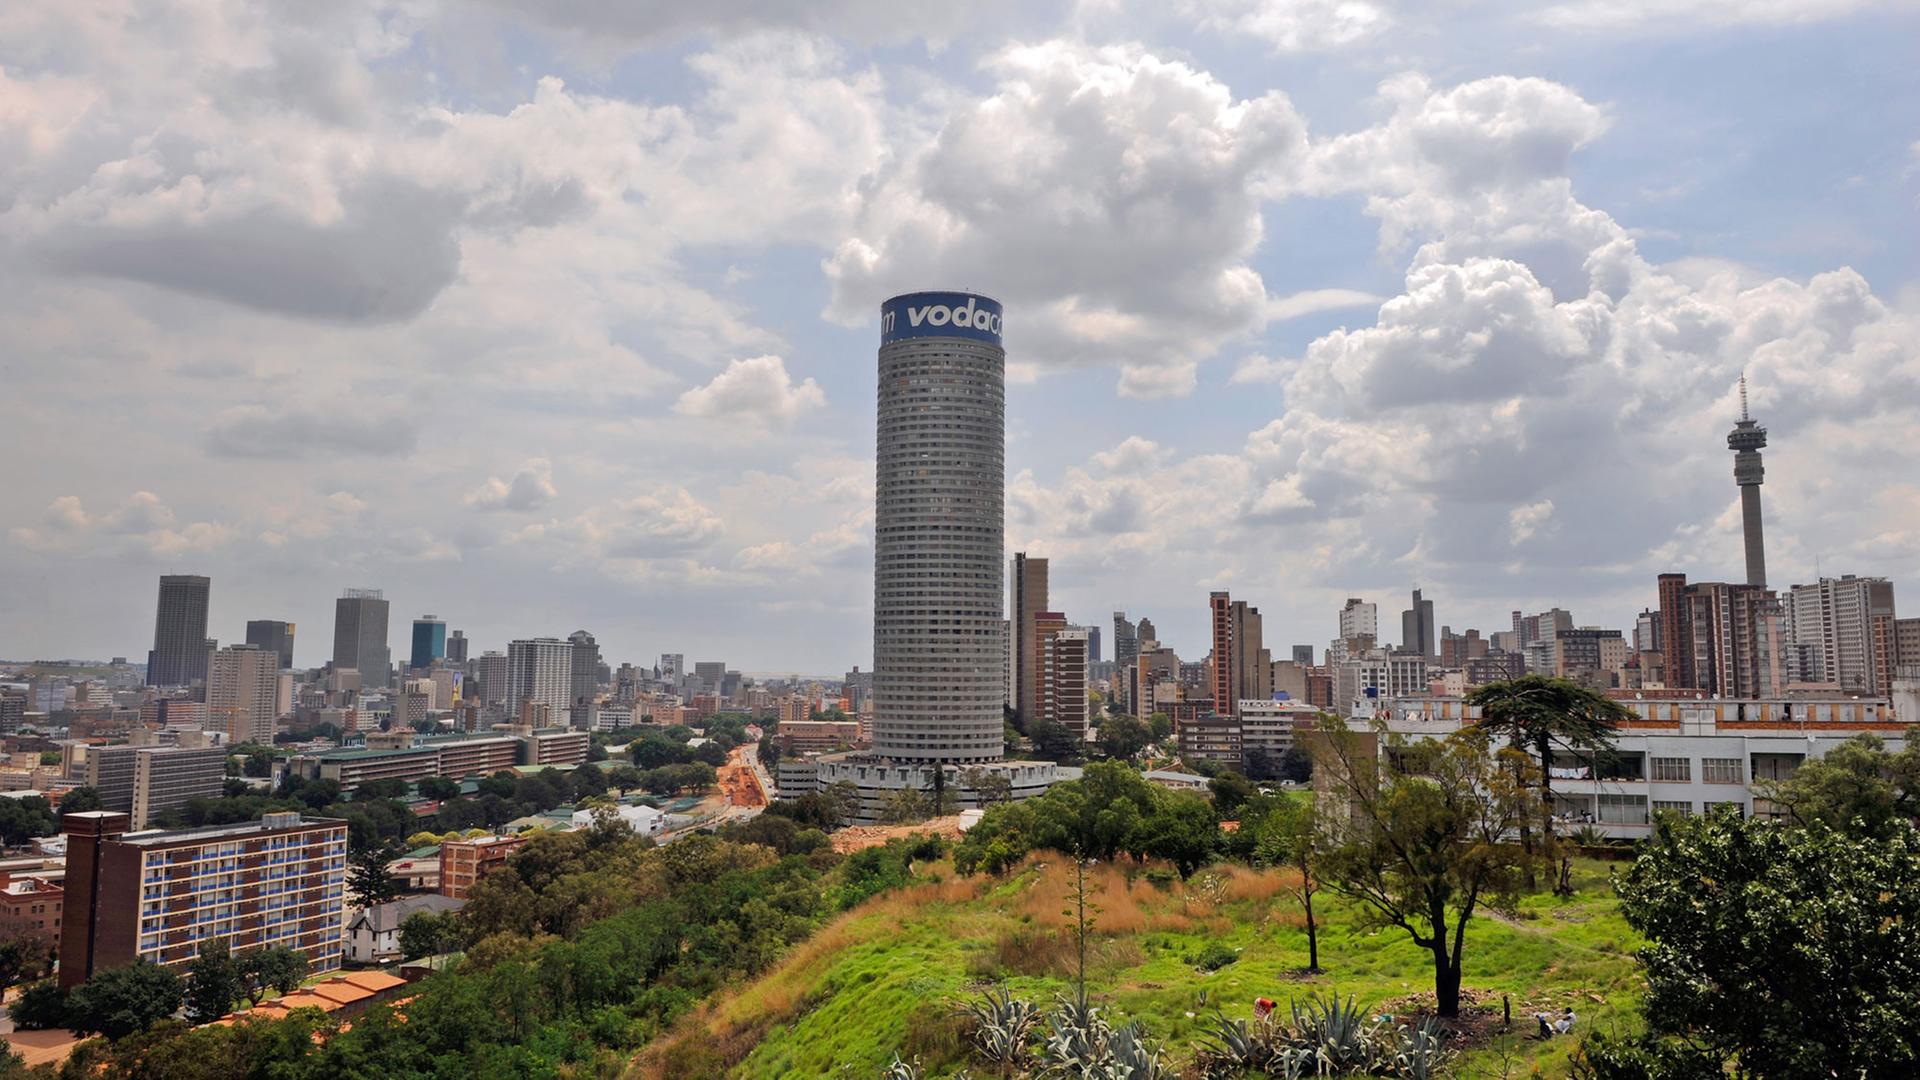 Die Skyline der südafrikanischen Stadt Johannesburg, aufgenommen am 22.11.2008.